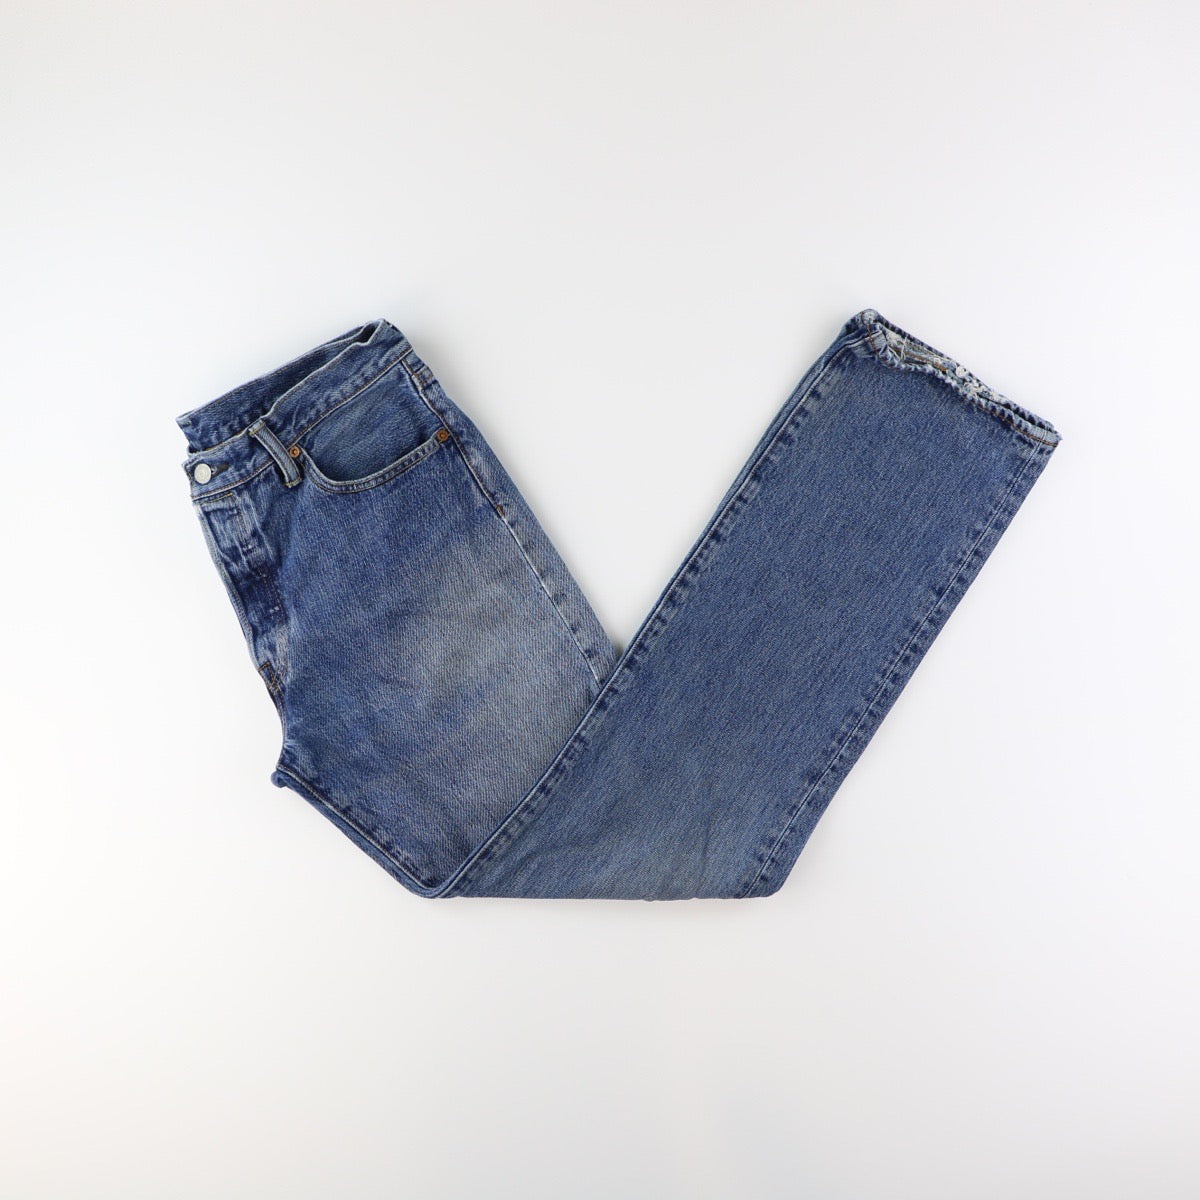 Levis 501 Jeans (34)